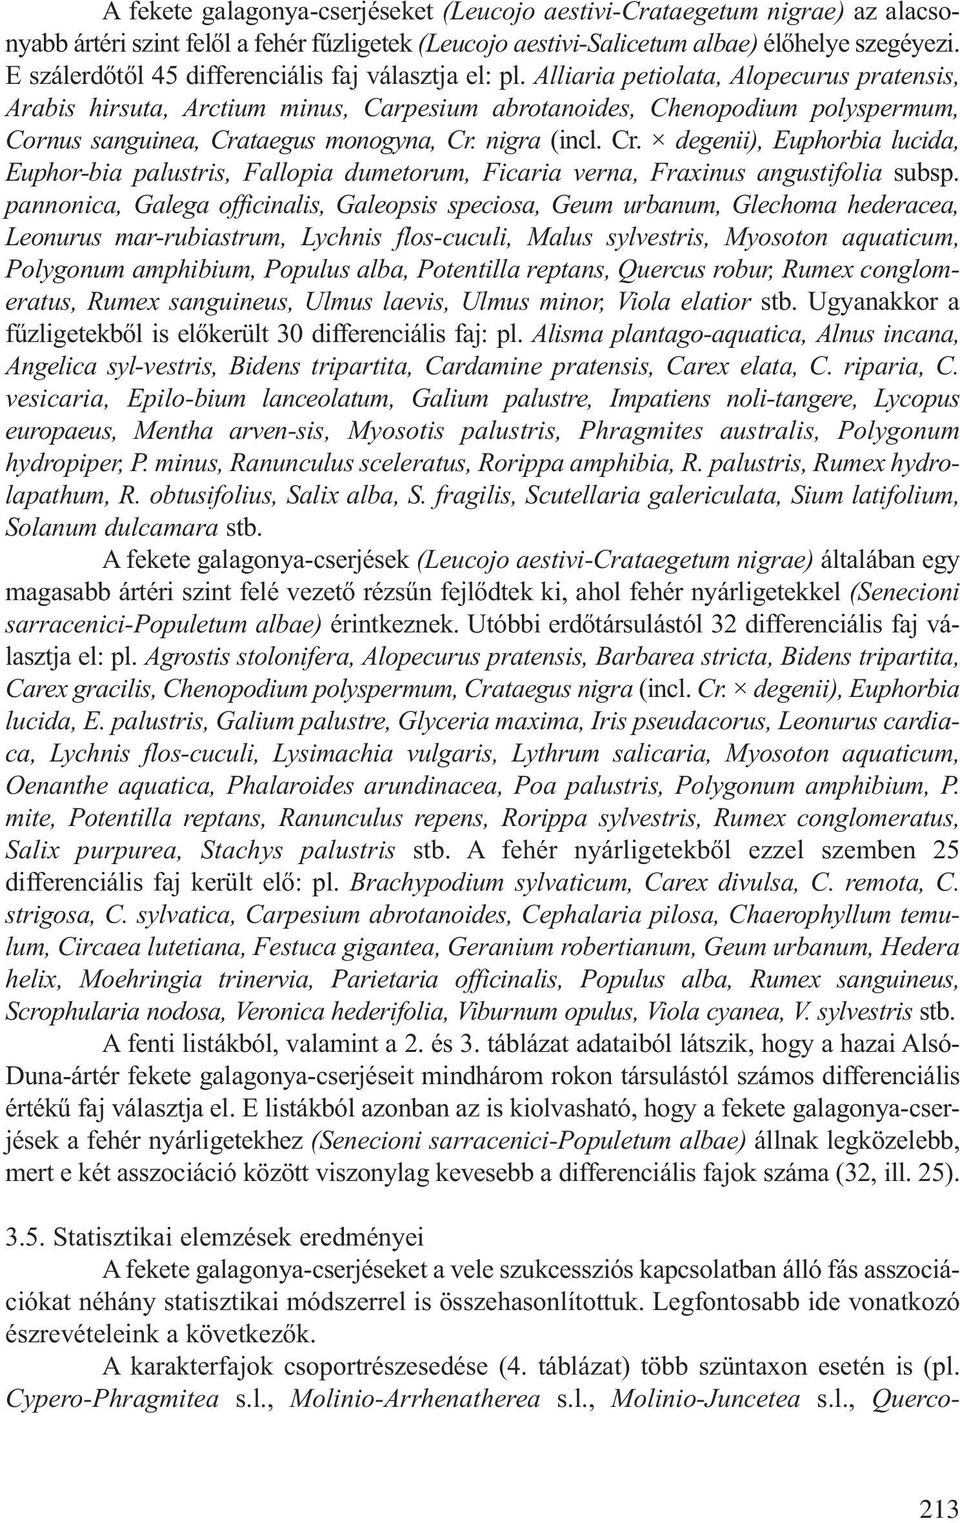 Alliaria petiolata, Alopecurus pratensis, Arabis hirsuta, Arctium minus, Carpesium abrotanoides, Chenopodium polyspermum, Cornus sanguinea, Cra